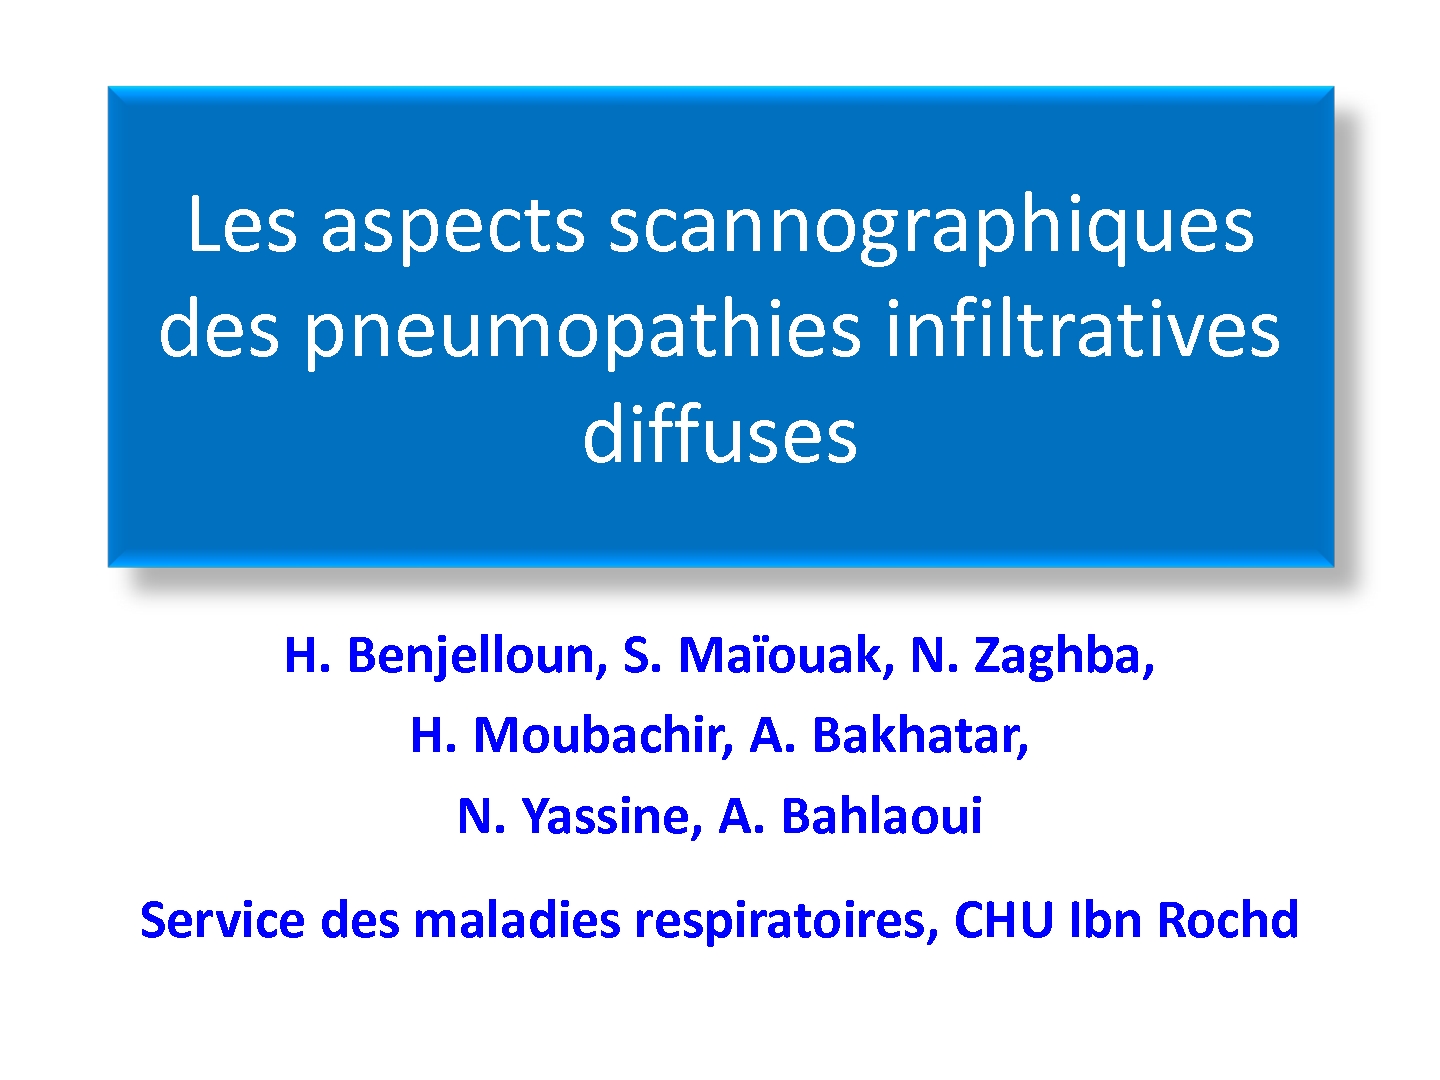 Les aspects scannographiques des pneumopathies infiltratives diffuses. H. BENJELLOUN